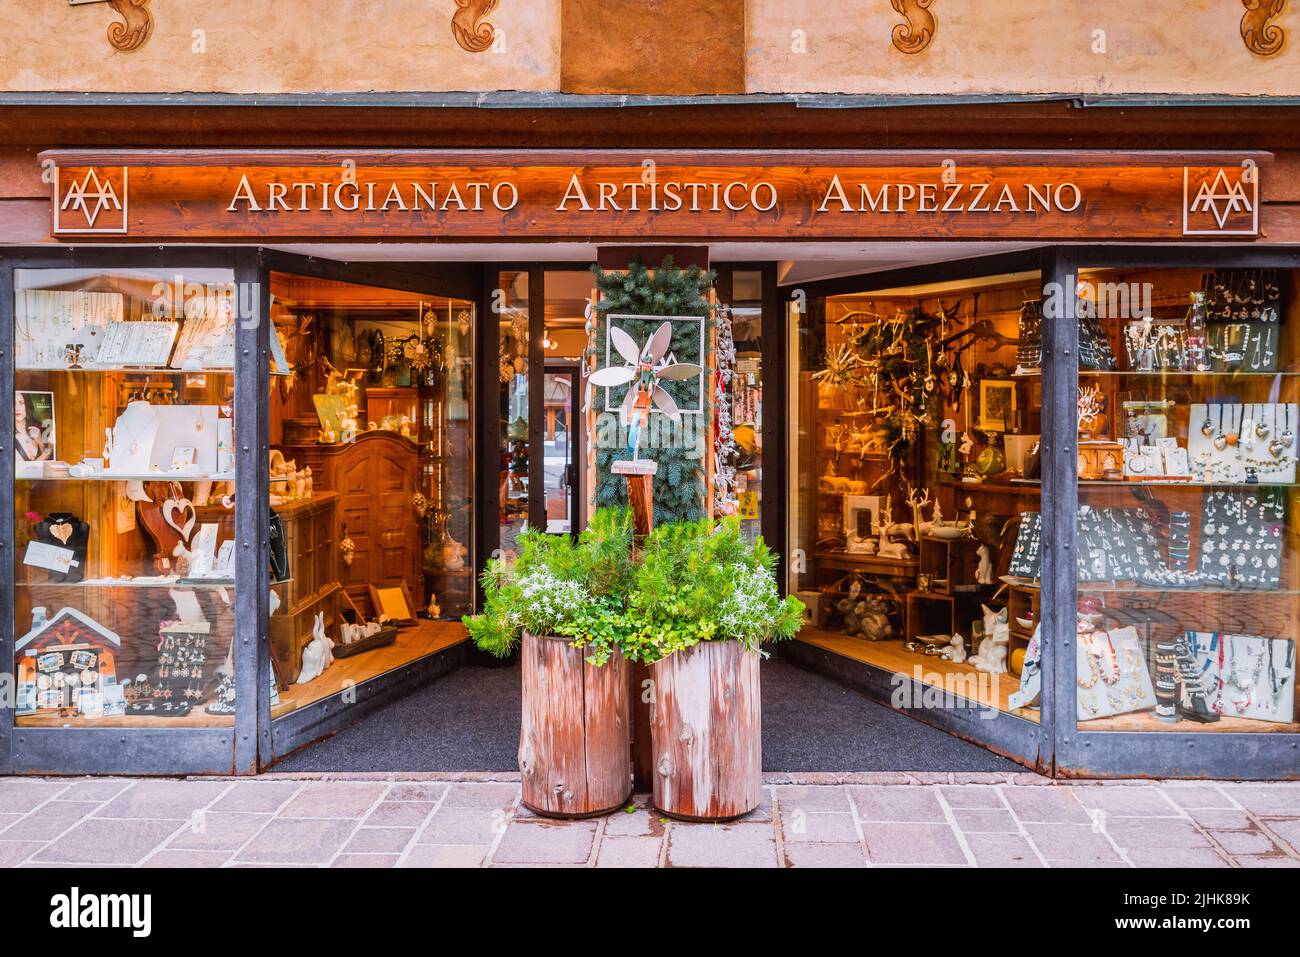 Tienda de artesanía regional. Cortina d'Ampezzo, Provincia de Belluno, Véneto, Italia, Europa. Foto de stock